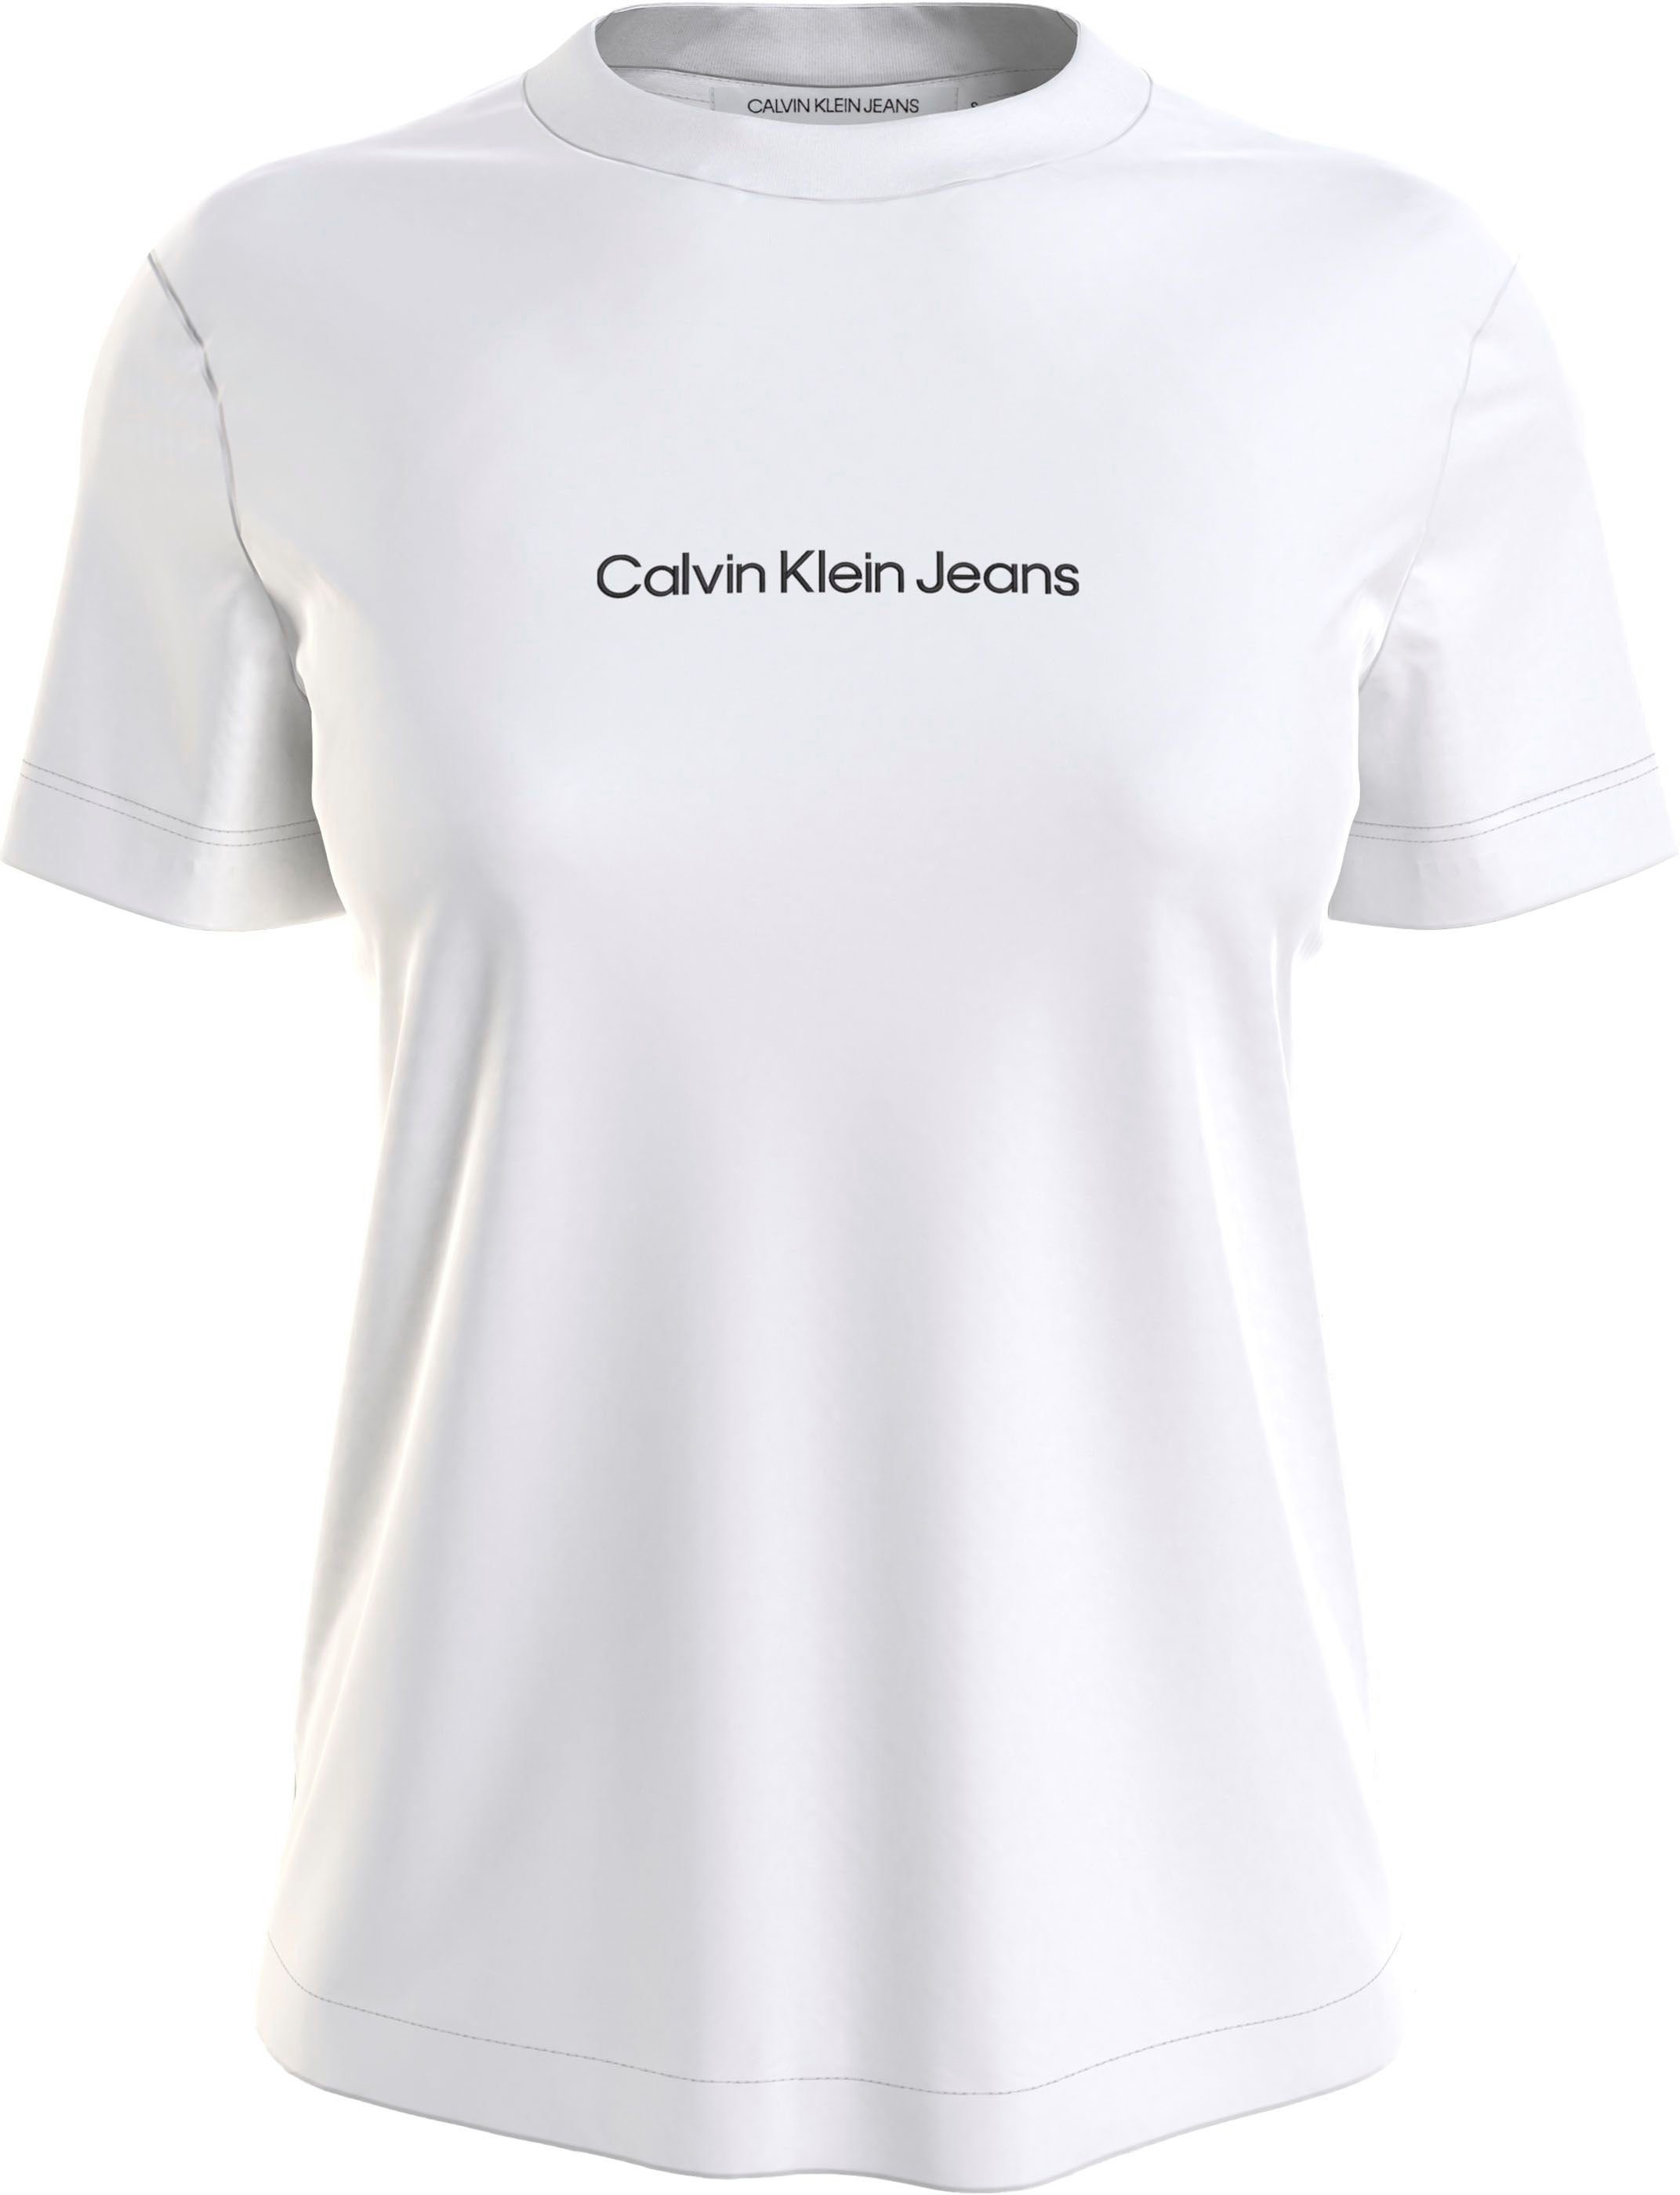 aus Baumwolle T-Shirt weiß Jeans Calvin reiner Klein